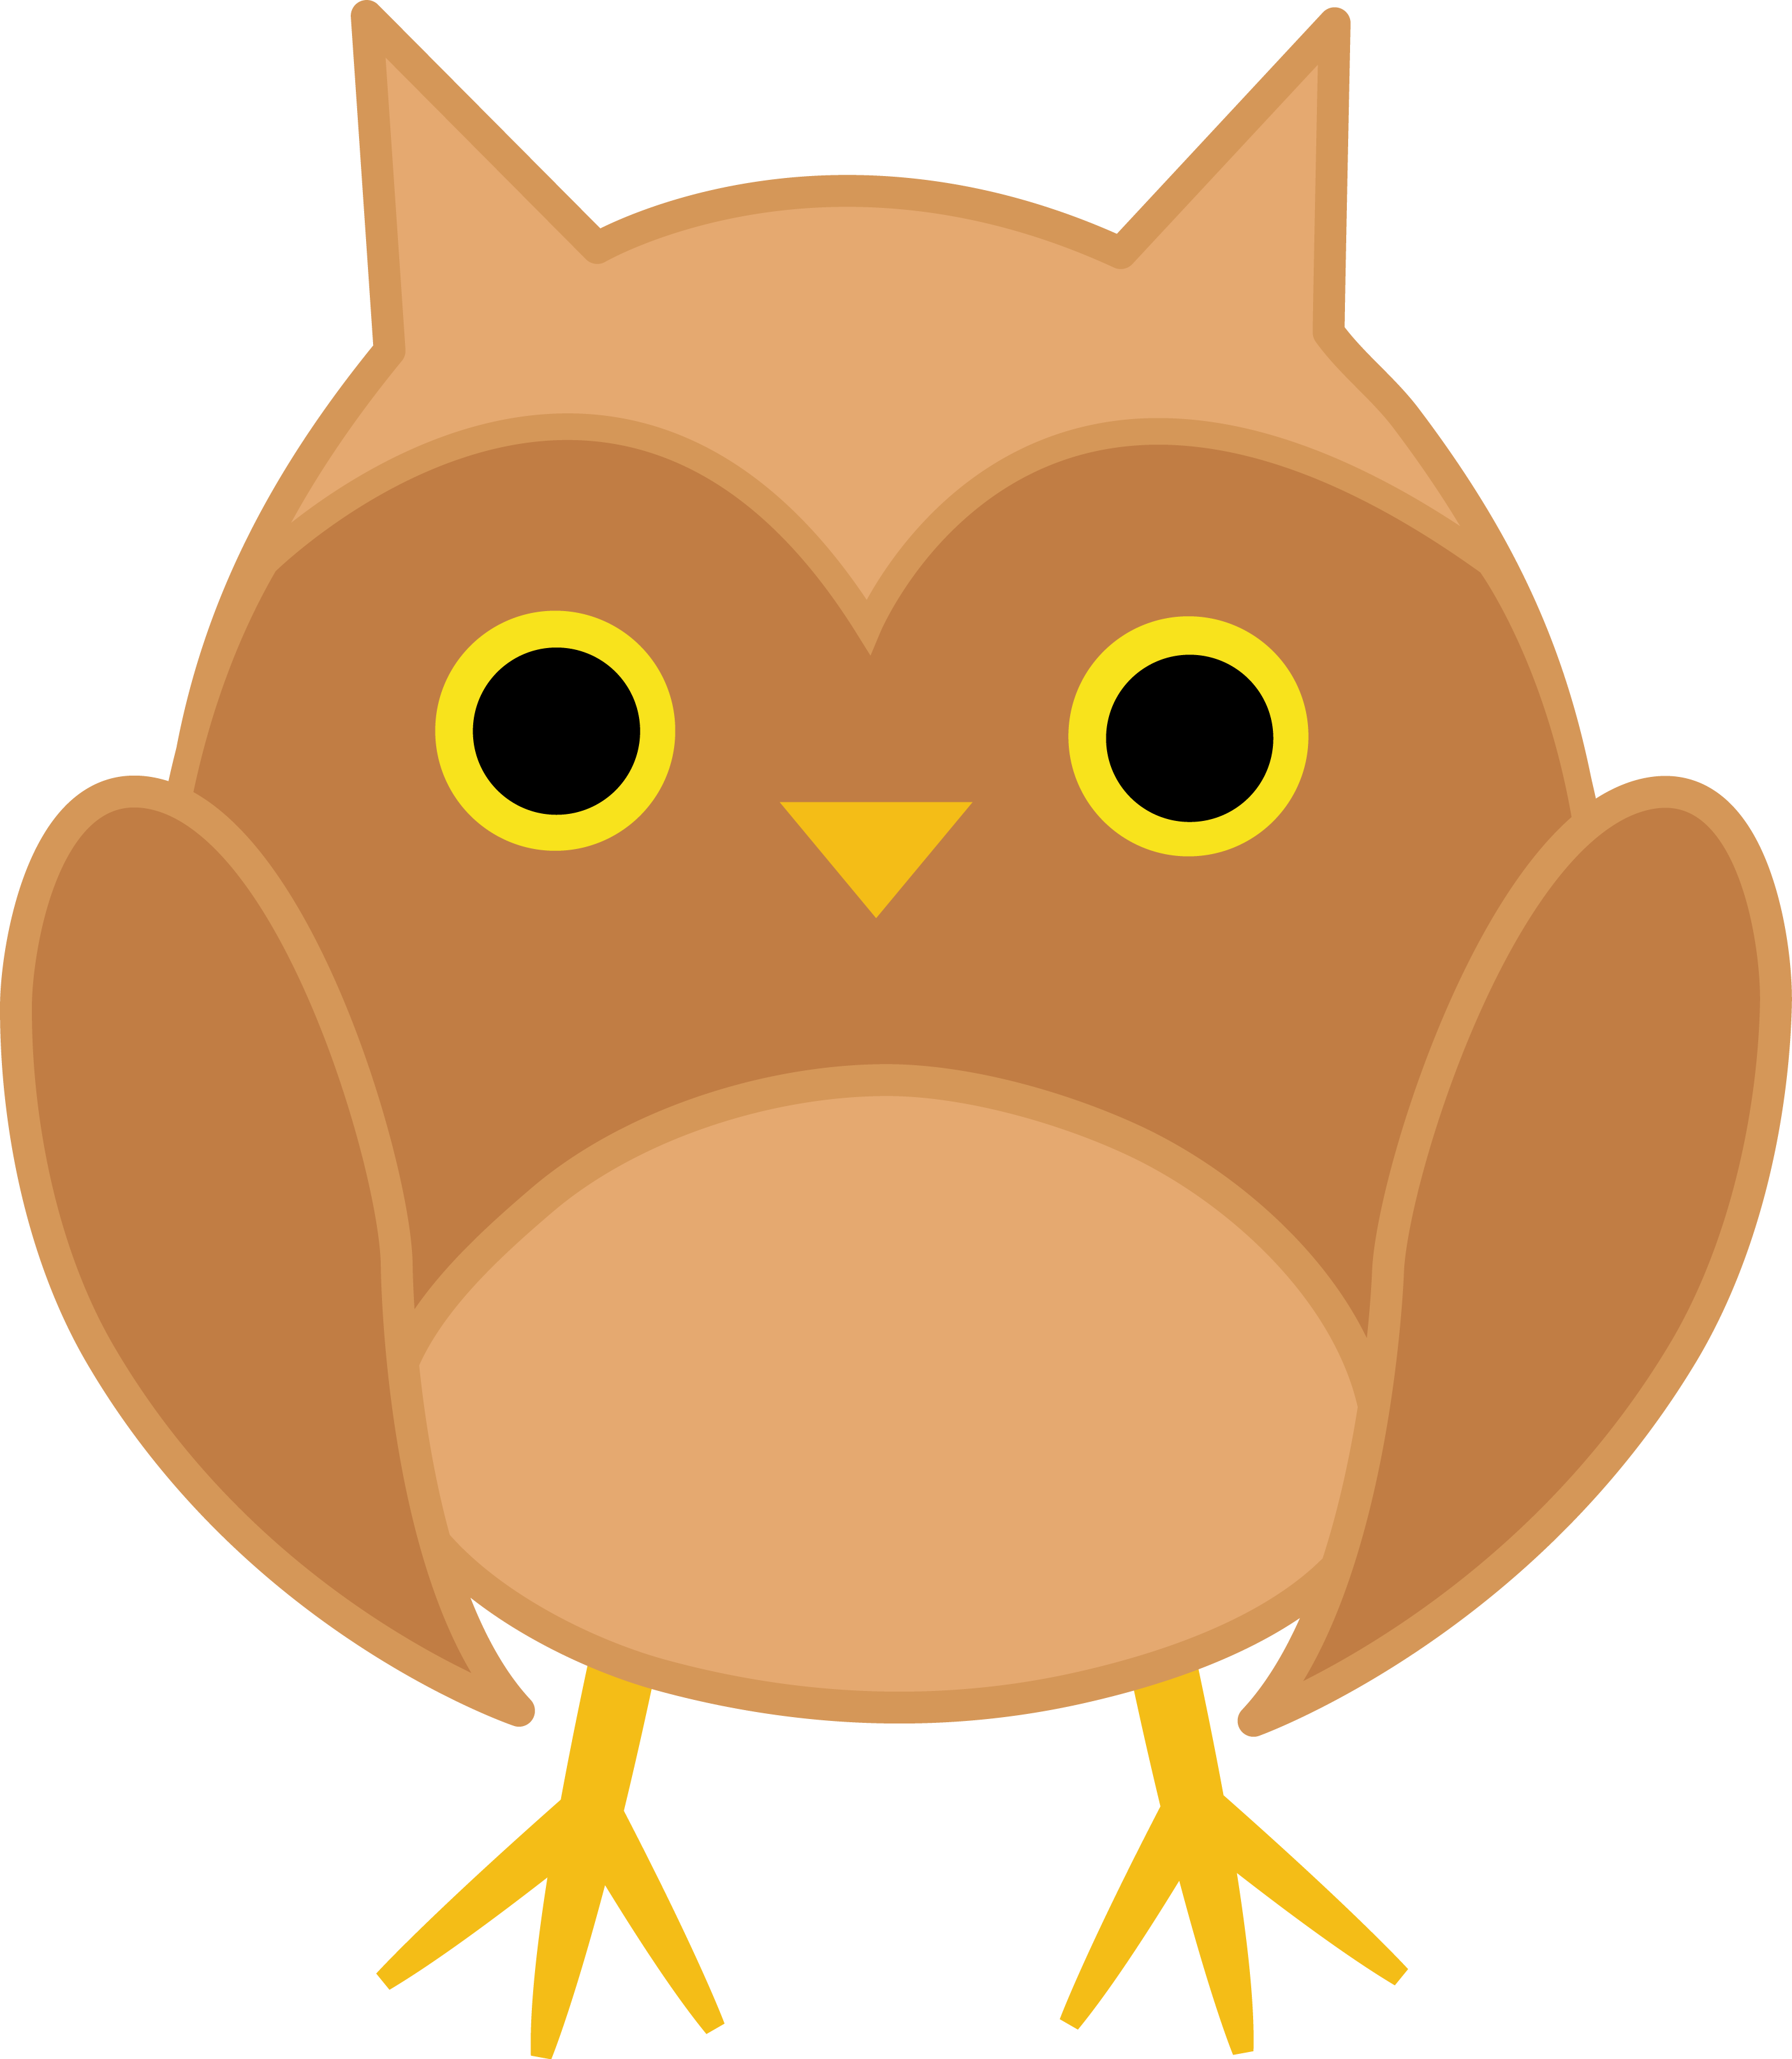 Cute brown owl.